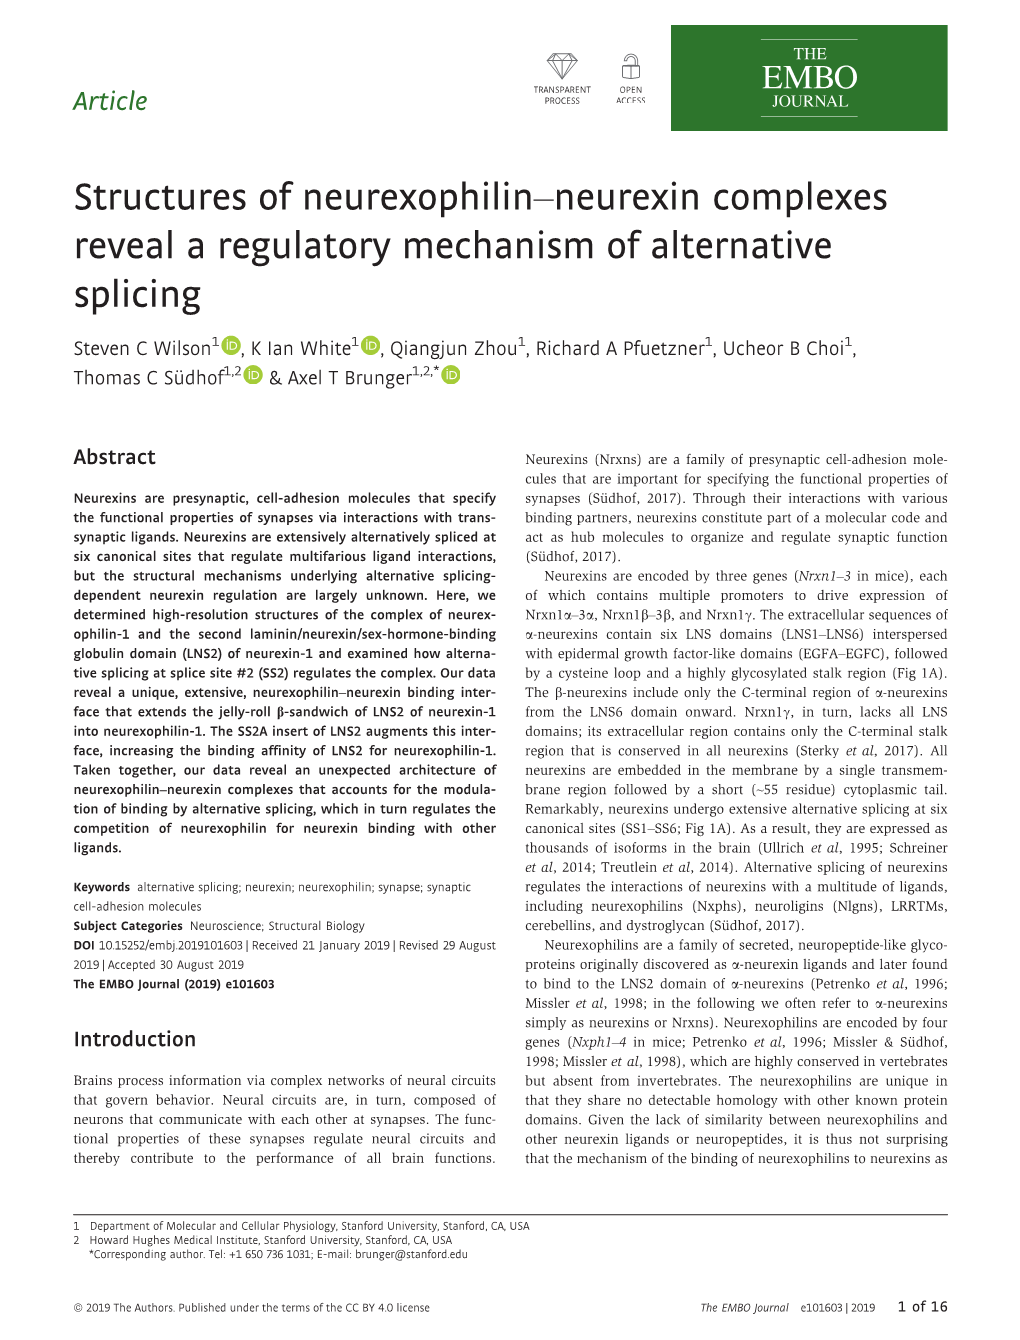 Structures of Neurexophilin–Neurexin Complexes Reveal a Regulatory Mechanism of Alternative Splicing